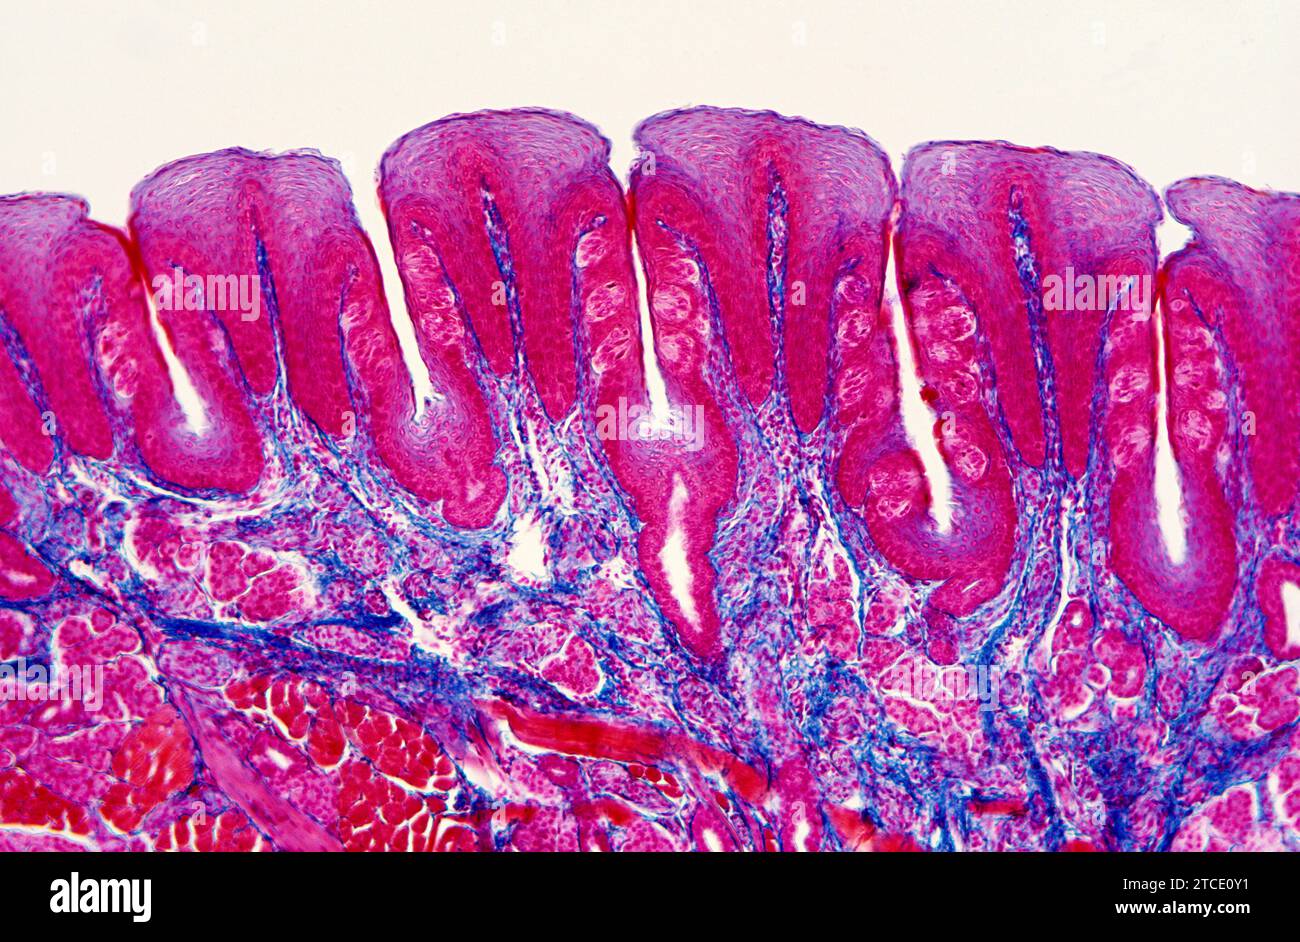 Papilles gustatives sur la langue humaine montrant des bourgeons gustatifs situés dans l'épithélium. Microscope optique X25 à 36 mm de largeur. Coupe transversale. Banque D'Images